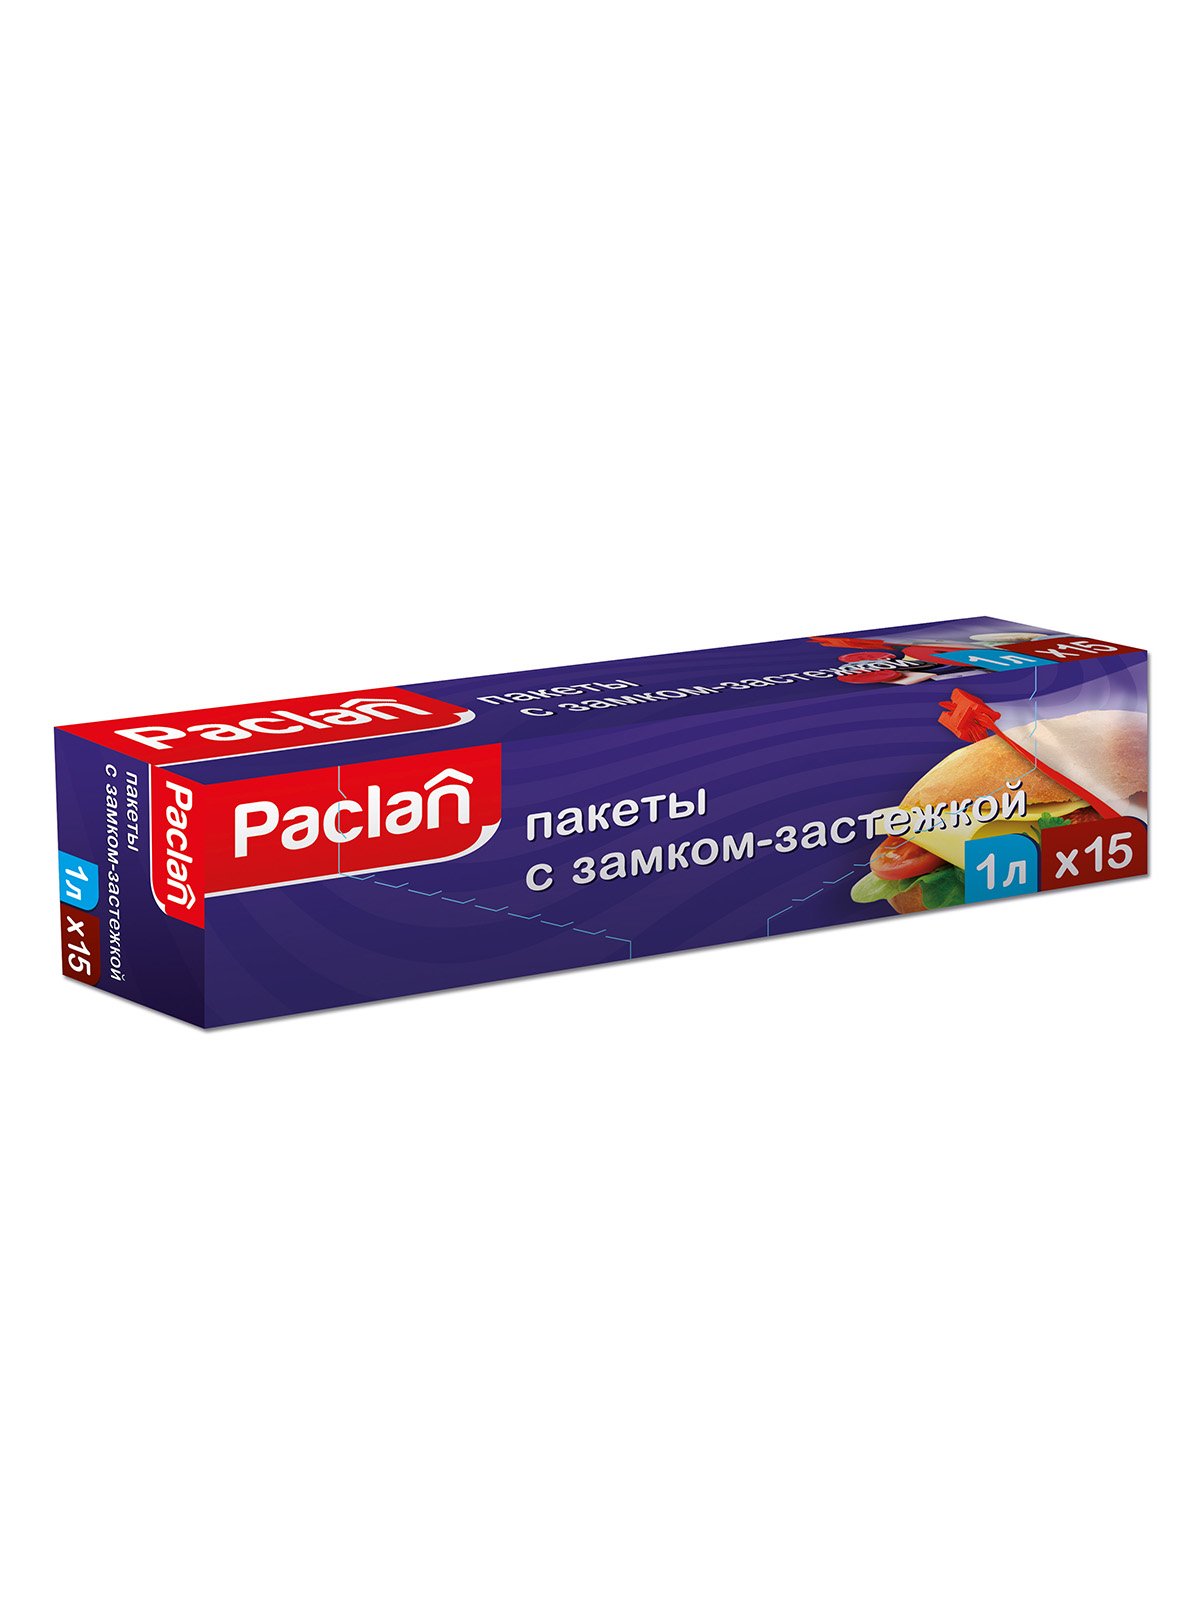 Пакеты Paclan с замком-застежкой (15 шт.) | 3167125